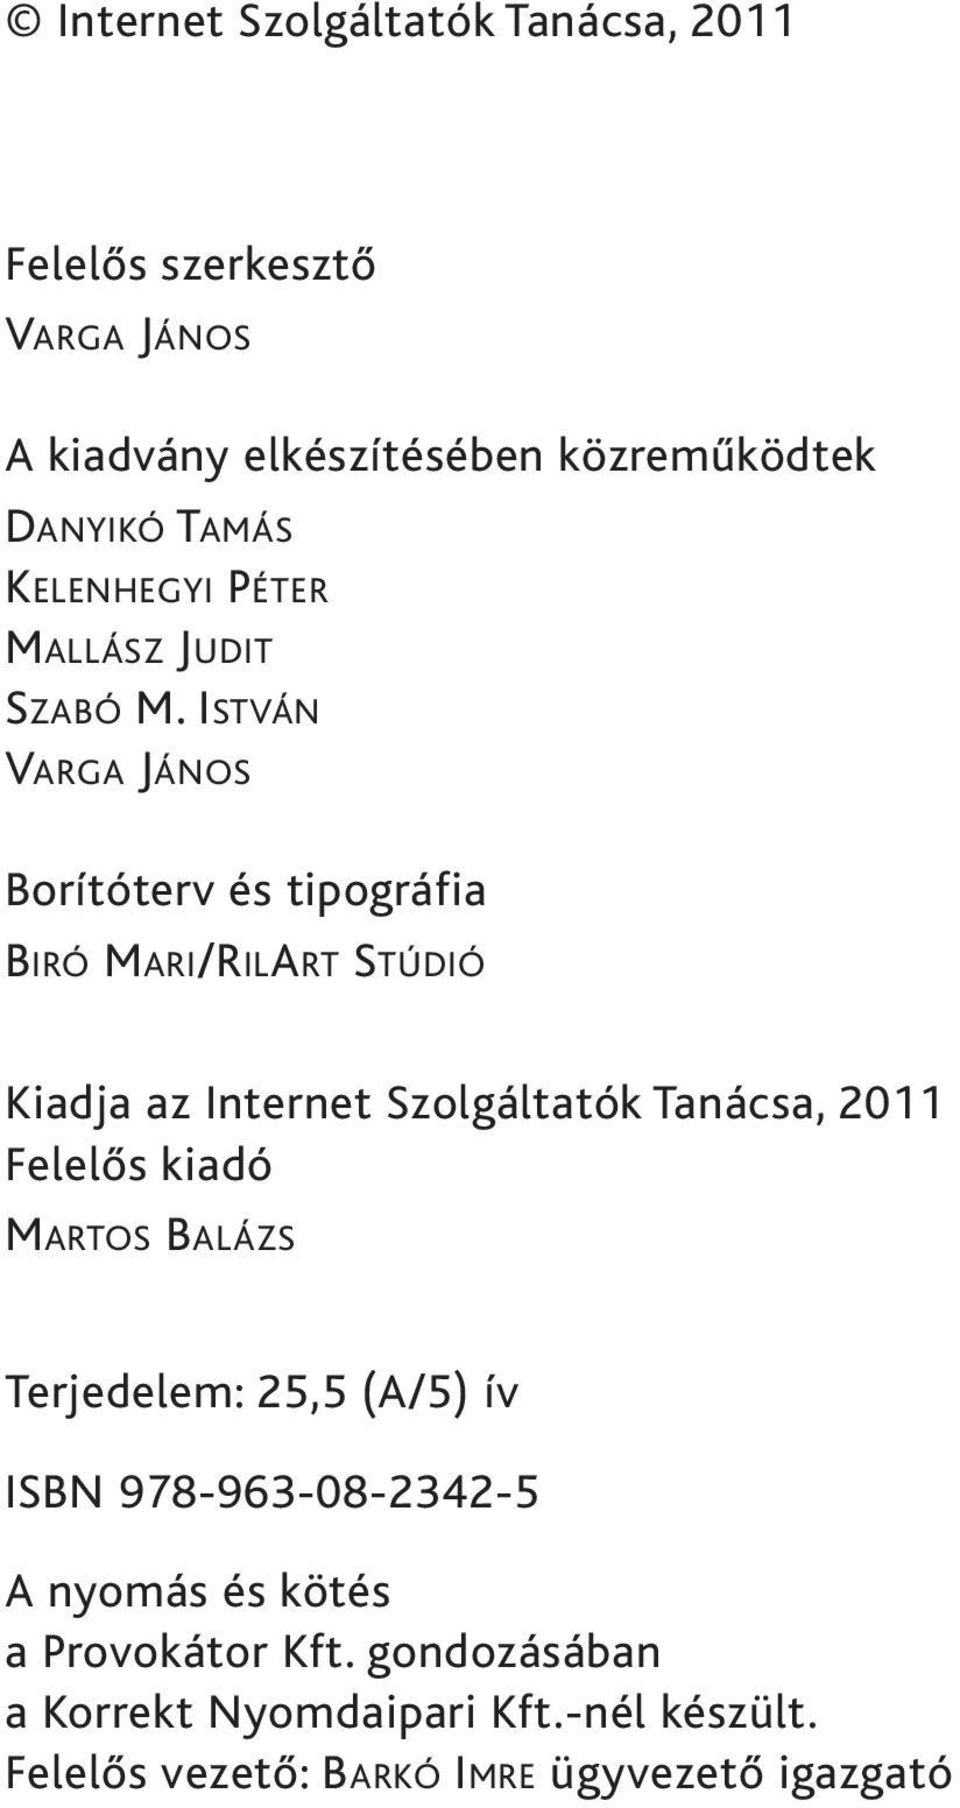 ISTVÁN VARGA JÁNOS Borítóterv és tipográfia BIRÓ MARI/RILART STÚDIÓ Kiadja az Internet Szolgáltatók Tanácsa, 2011 Felelős